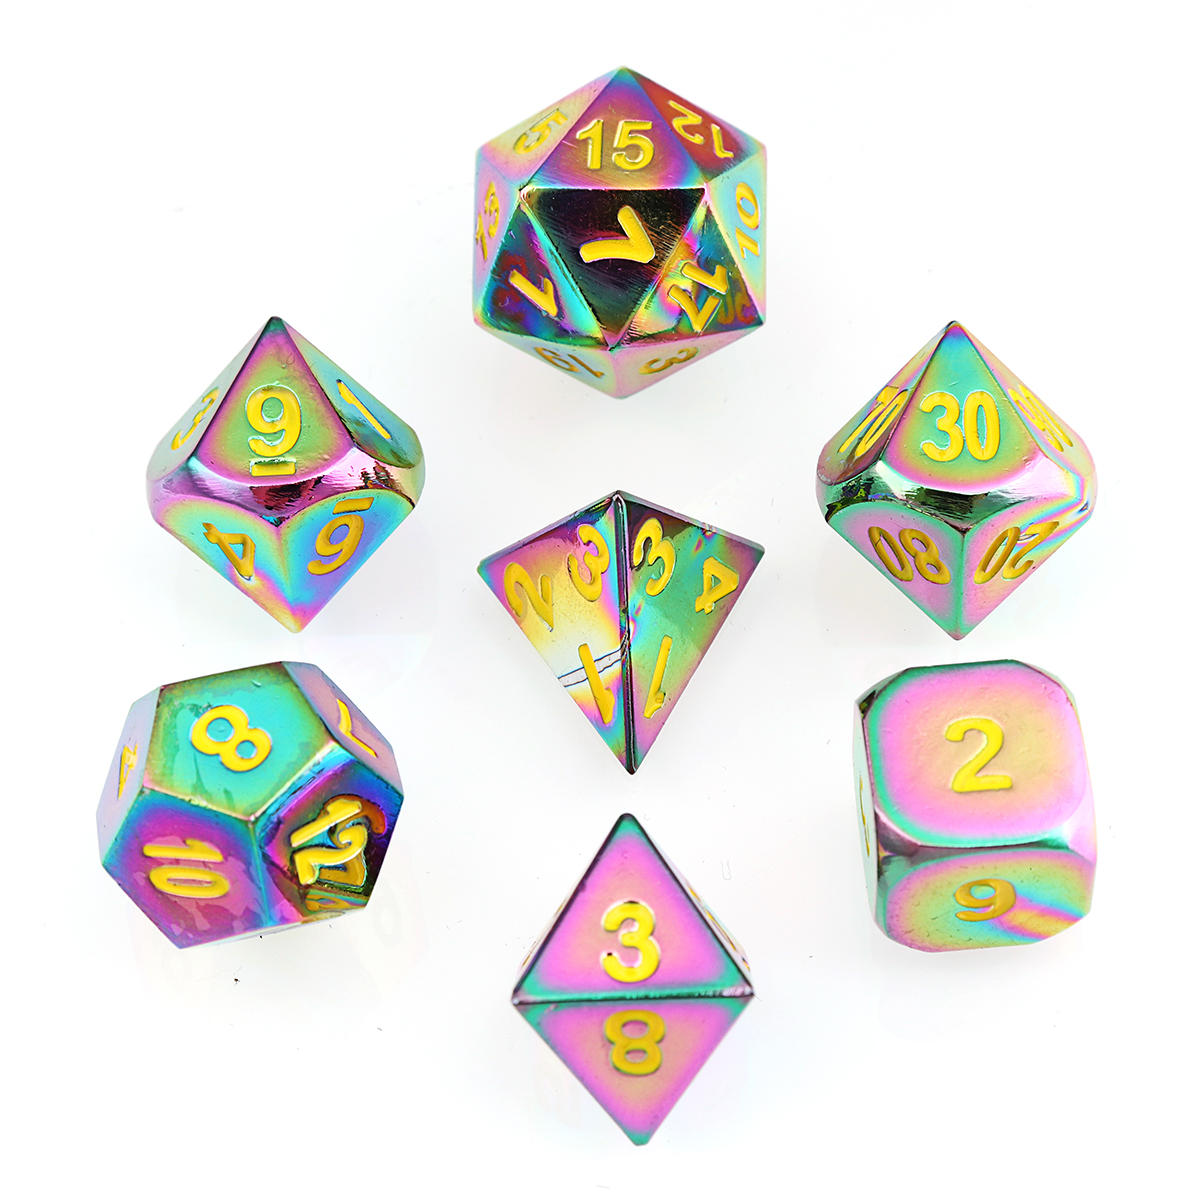 7 stuks reliëf heavy metal polyhedral dice dnd rpg mtg rollenspel met tas